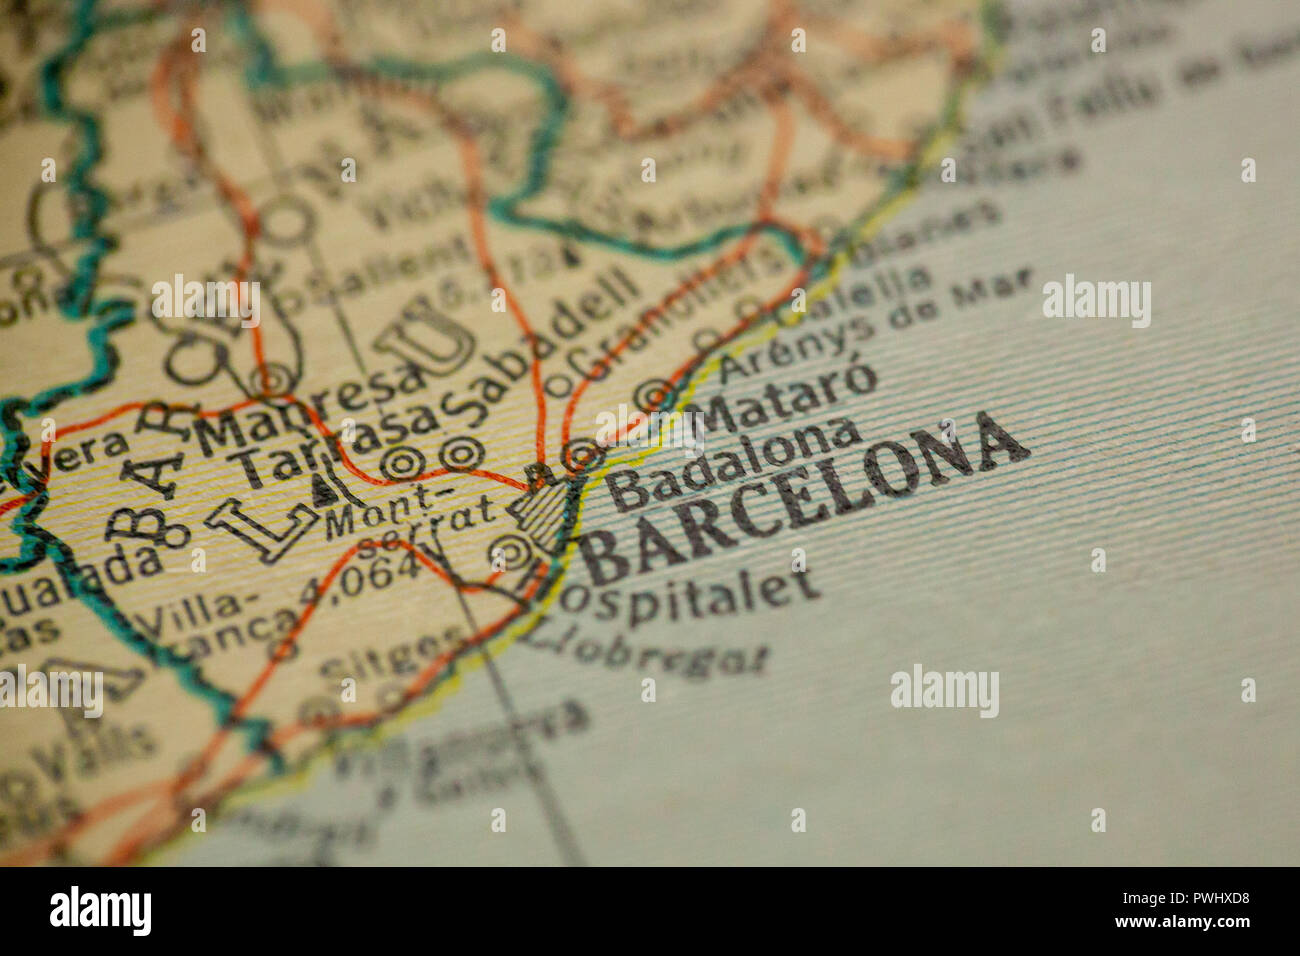 Barcelona Spanien Ist Das Zentrum Der Fokus Auf Eine Alte Karte Stockfotografie Alamy